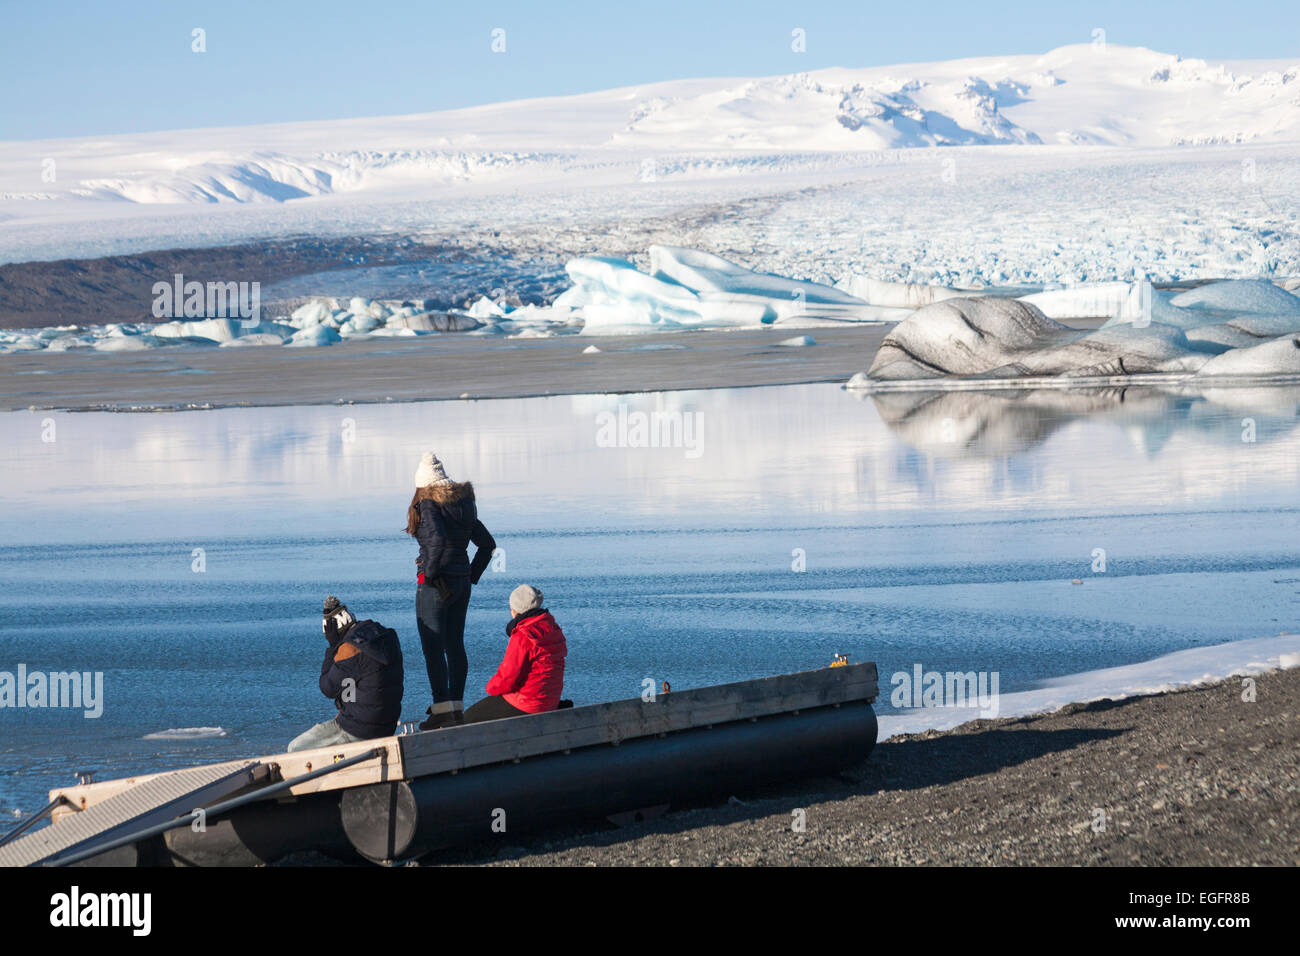 Groupe de touristes admirant la vue sur la lagune Glaciaire de Jokulsarlon, au bord du parc national de Vatnajokull, Islande, en février Banque D'Images